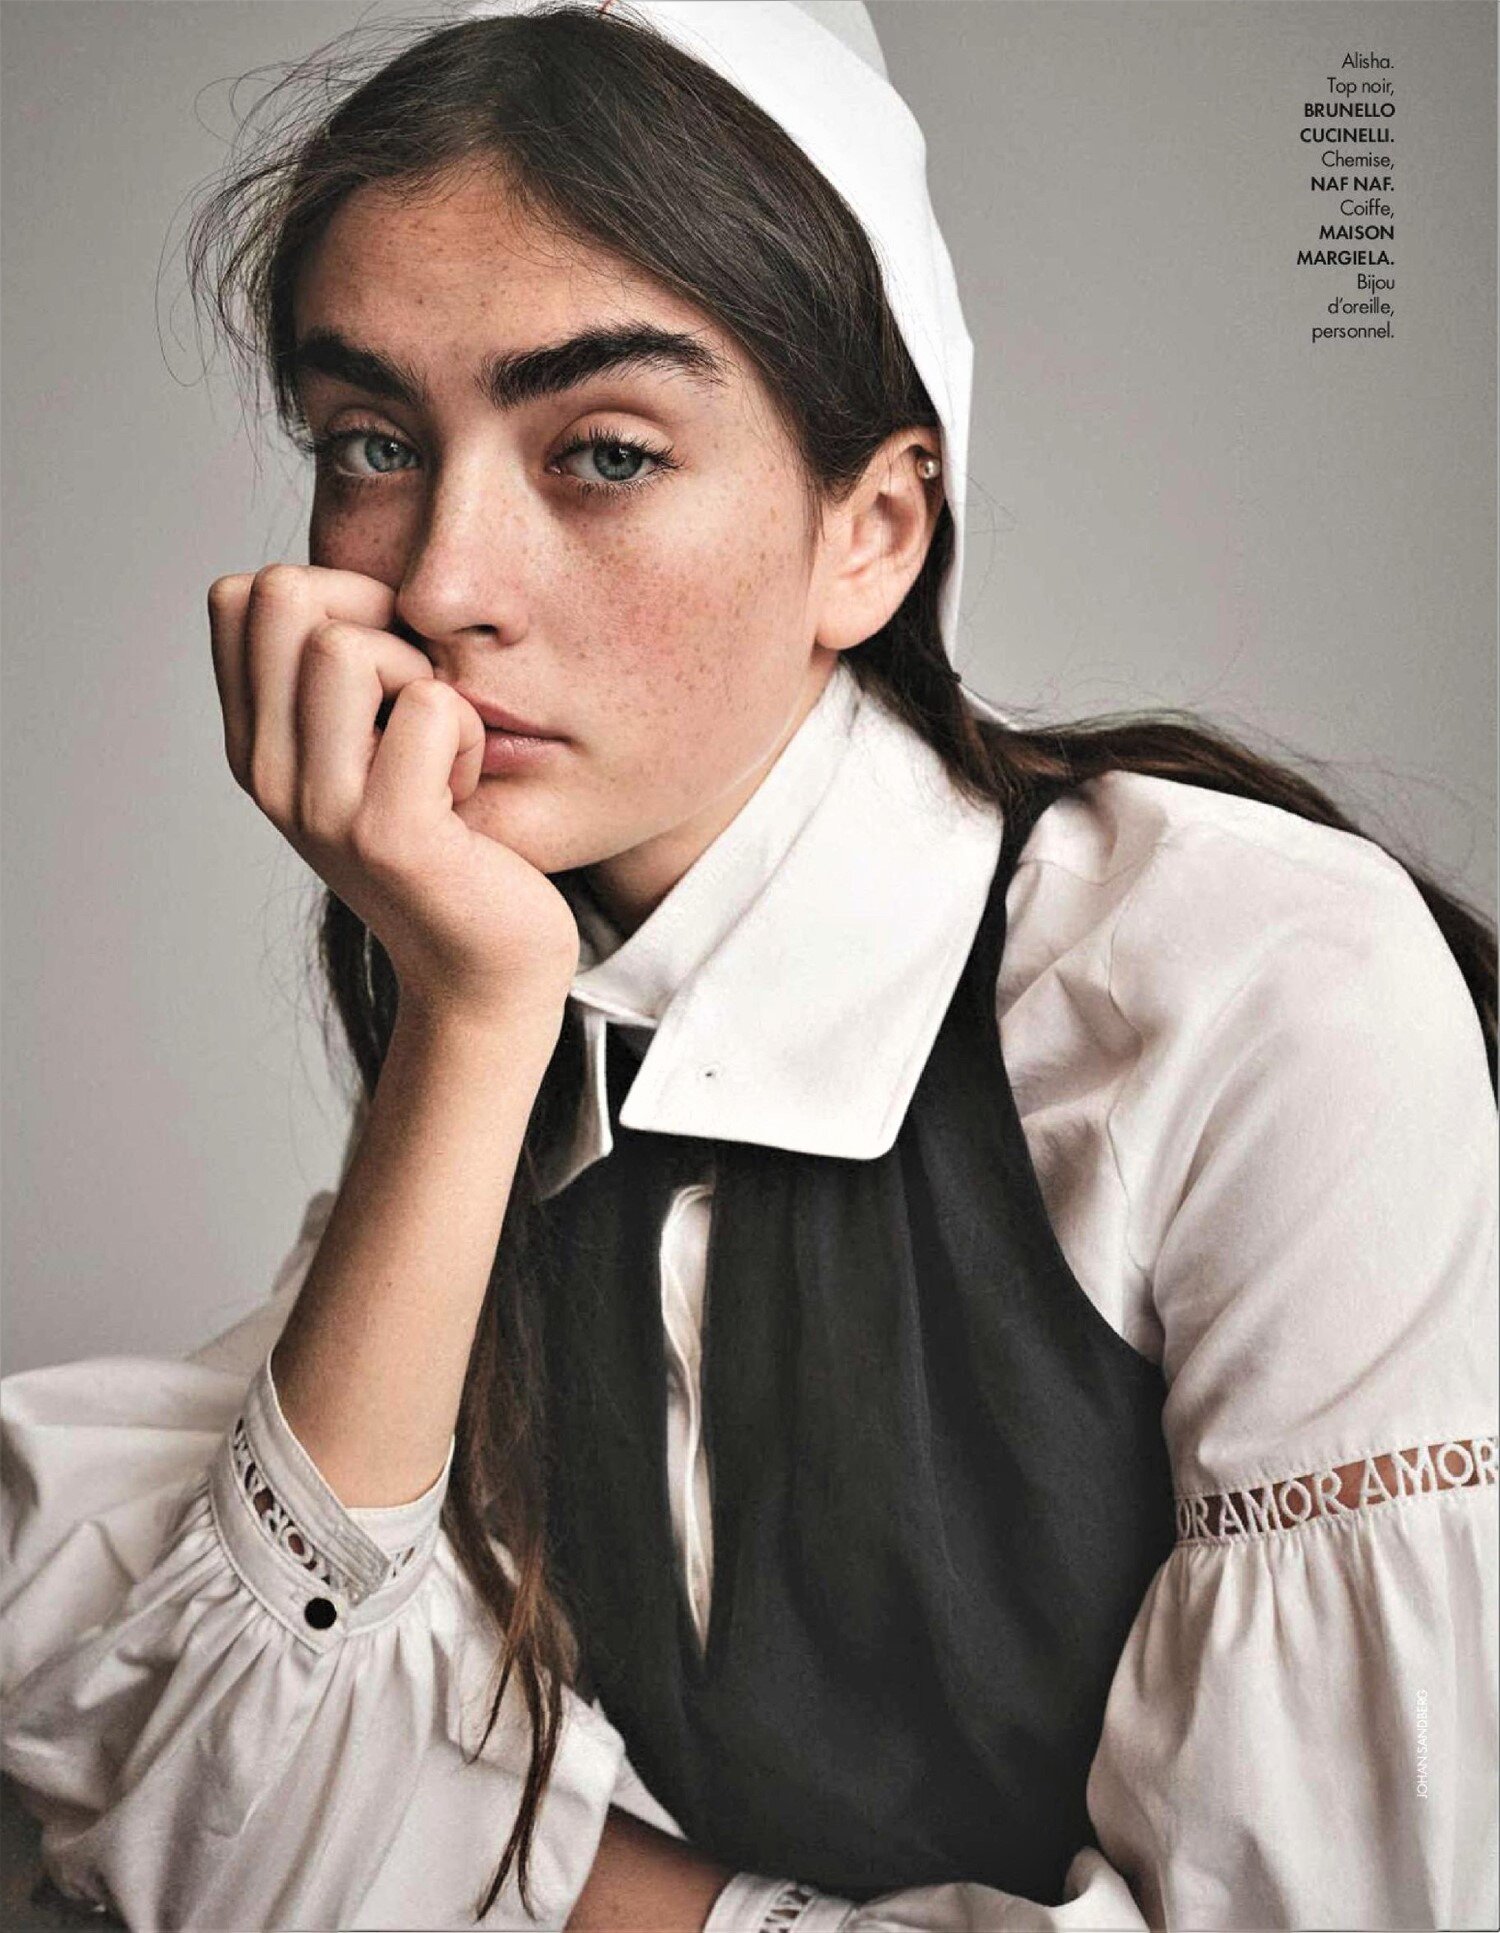 Johan Sandberg 'Belle Amish' for ELLE France May 7 (2).jpg